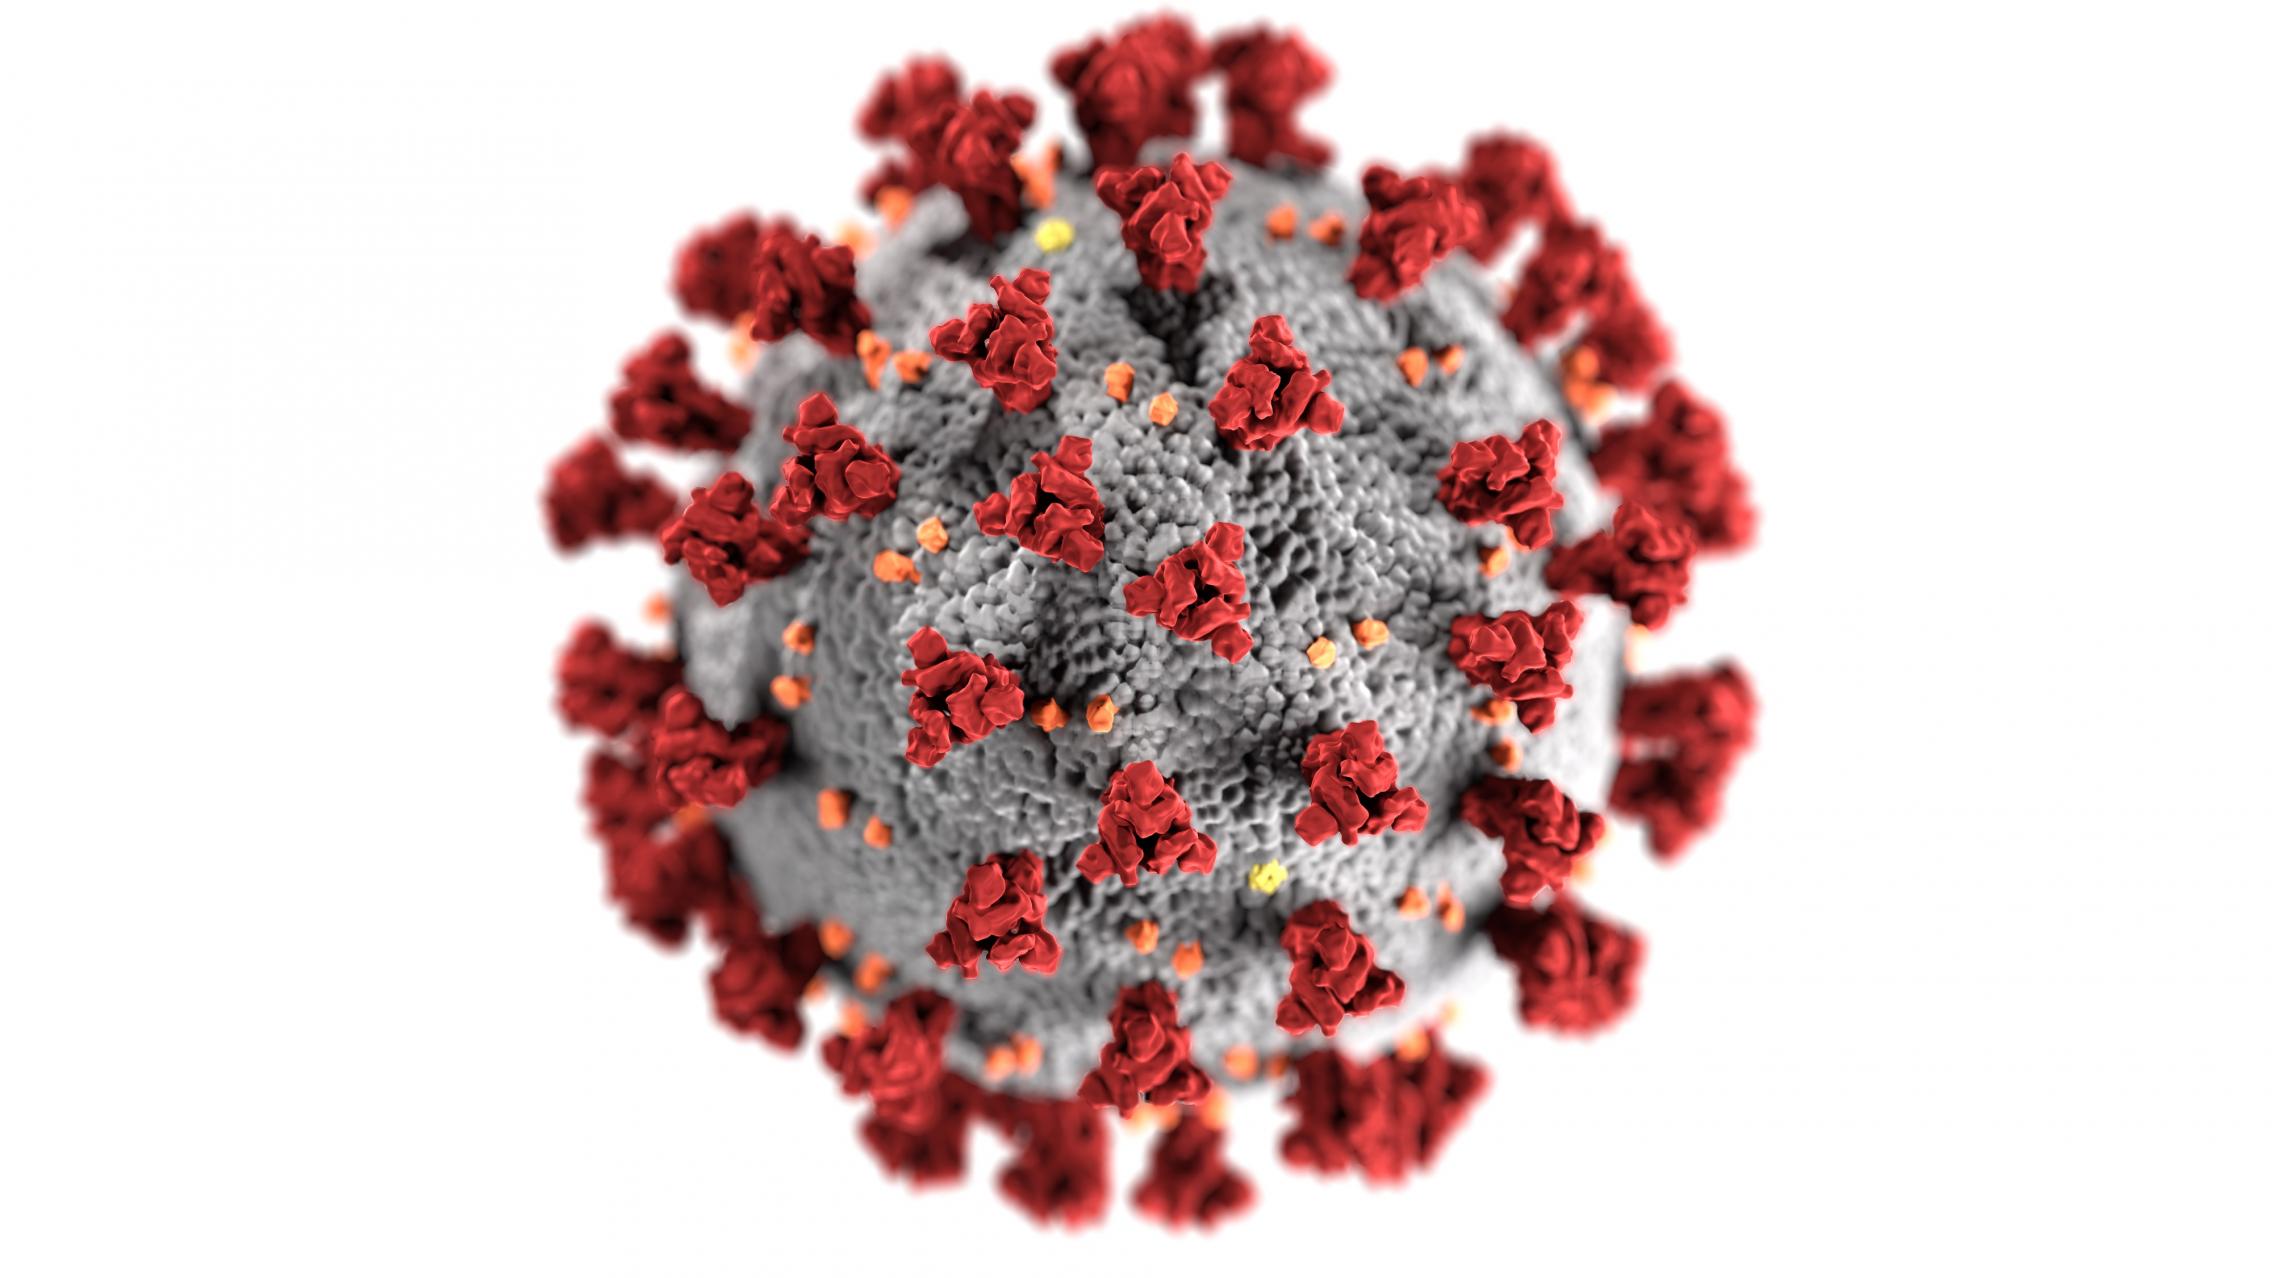 cdc image of coronavirus